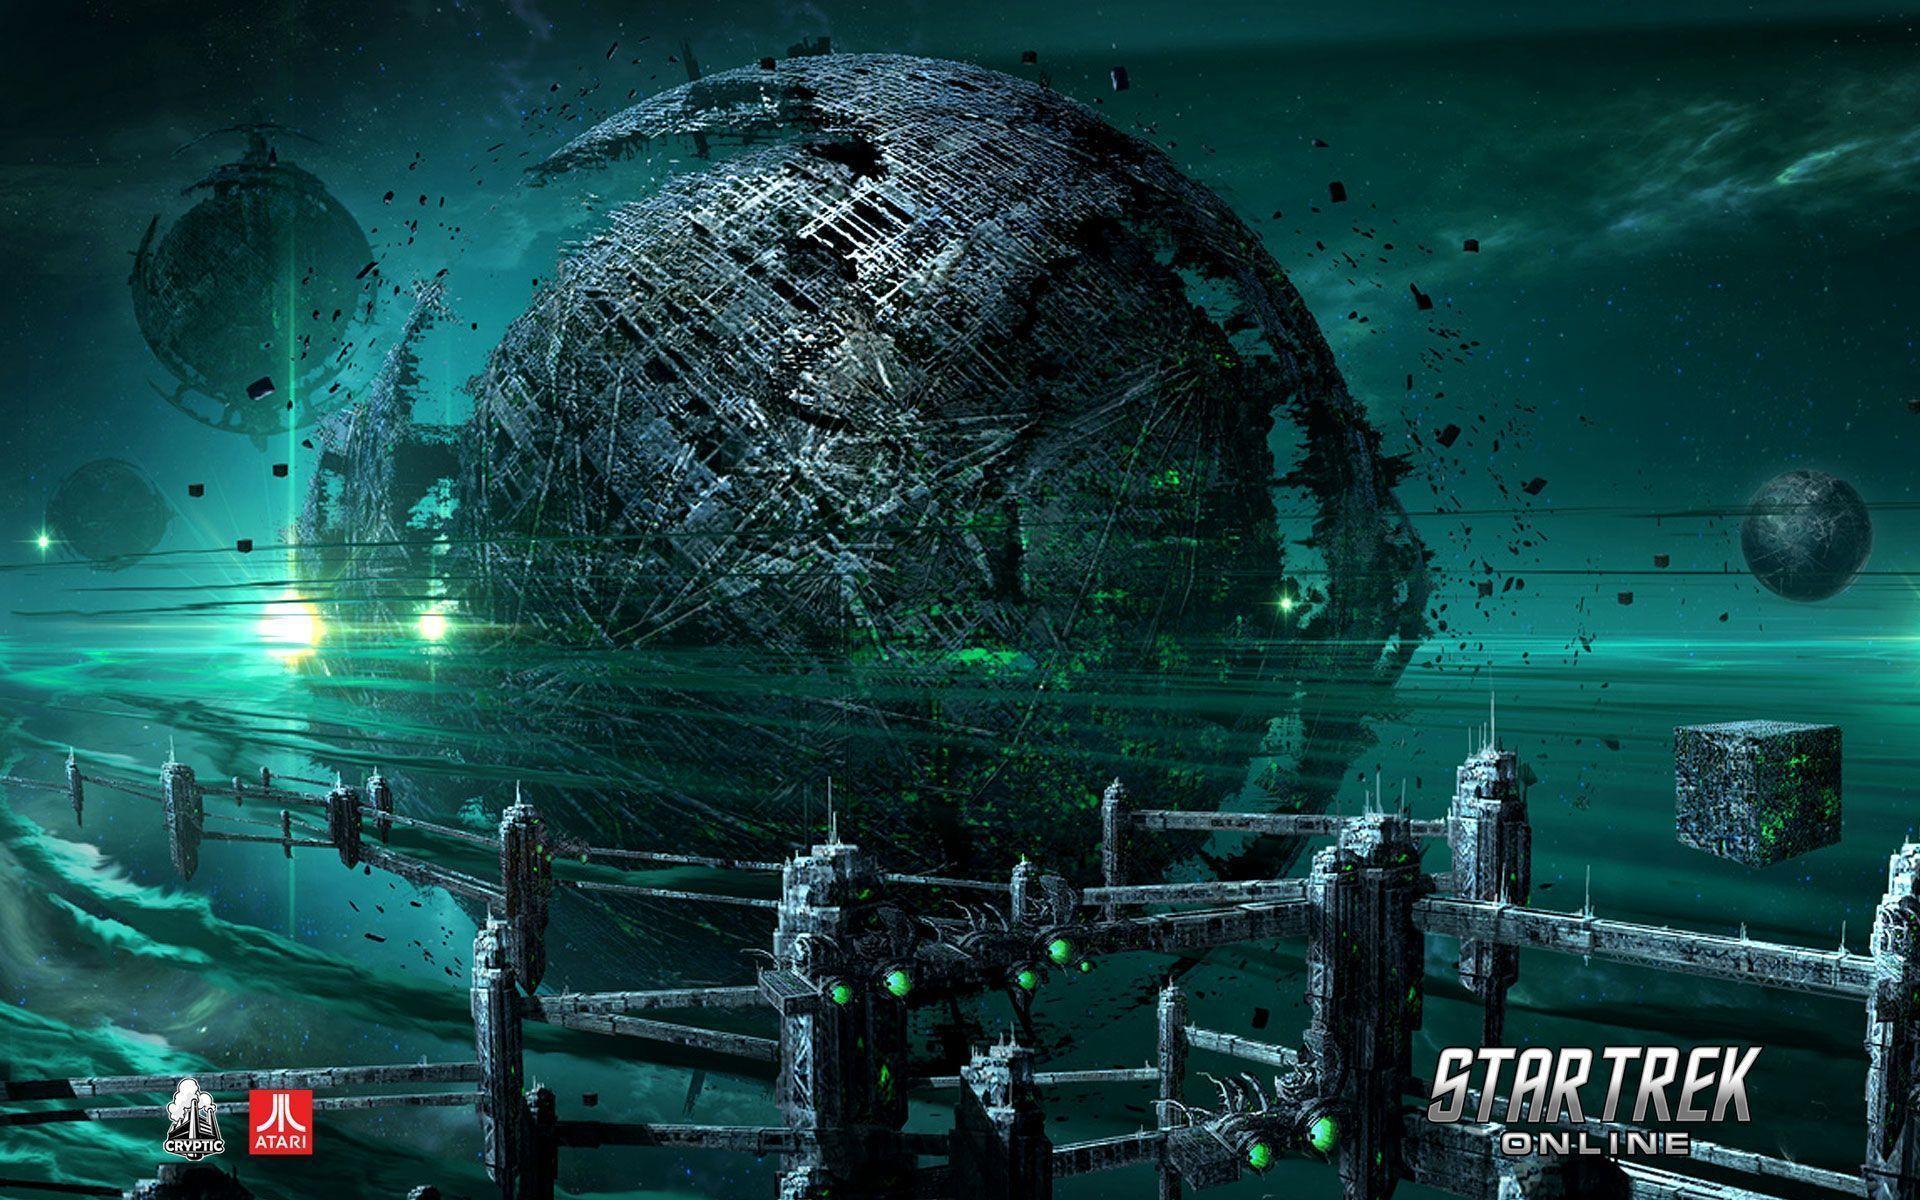 Star Trek Online Borg Planet Wallpaper Background « DotGames.co.uk